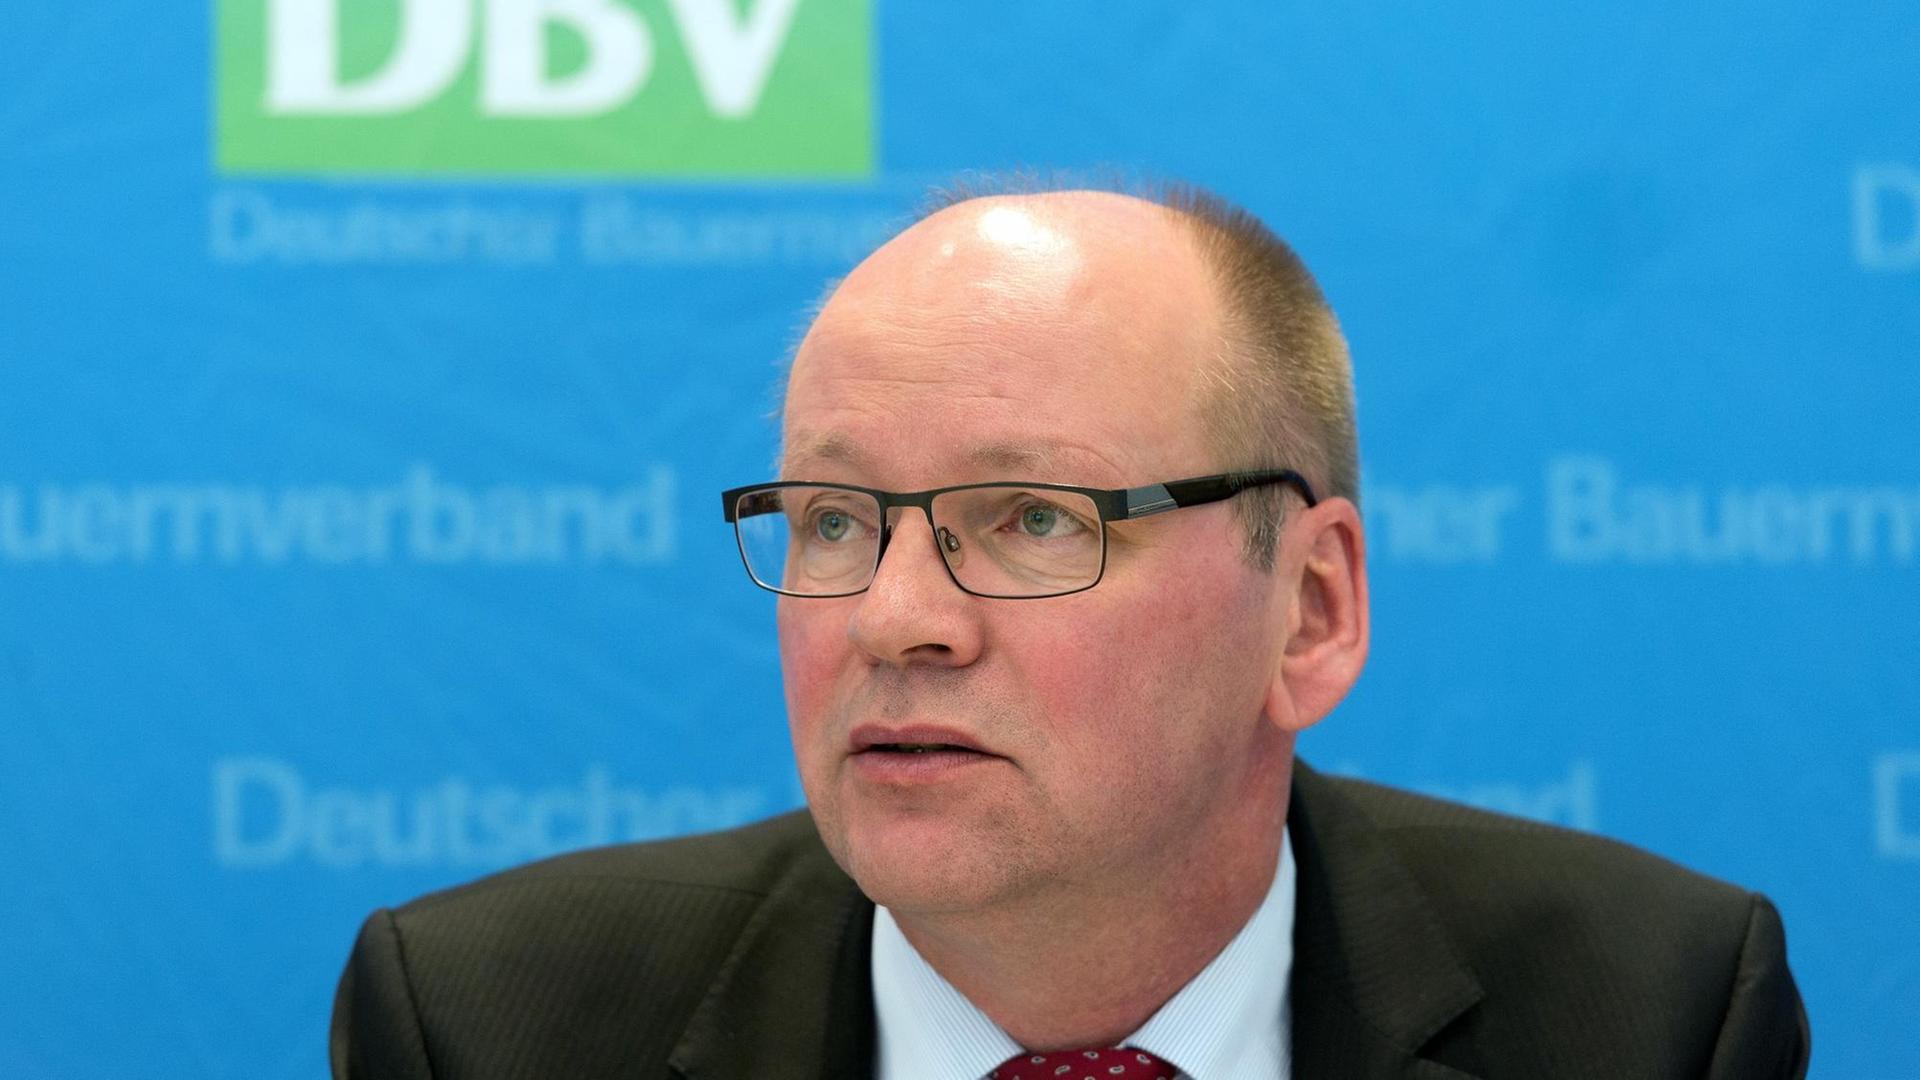 Bernhard Krüsken, Generalsekretär des Deutschen Bauernverbands, auf einer Pressekonferenz am 28.06.2016 in Hannover.